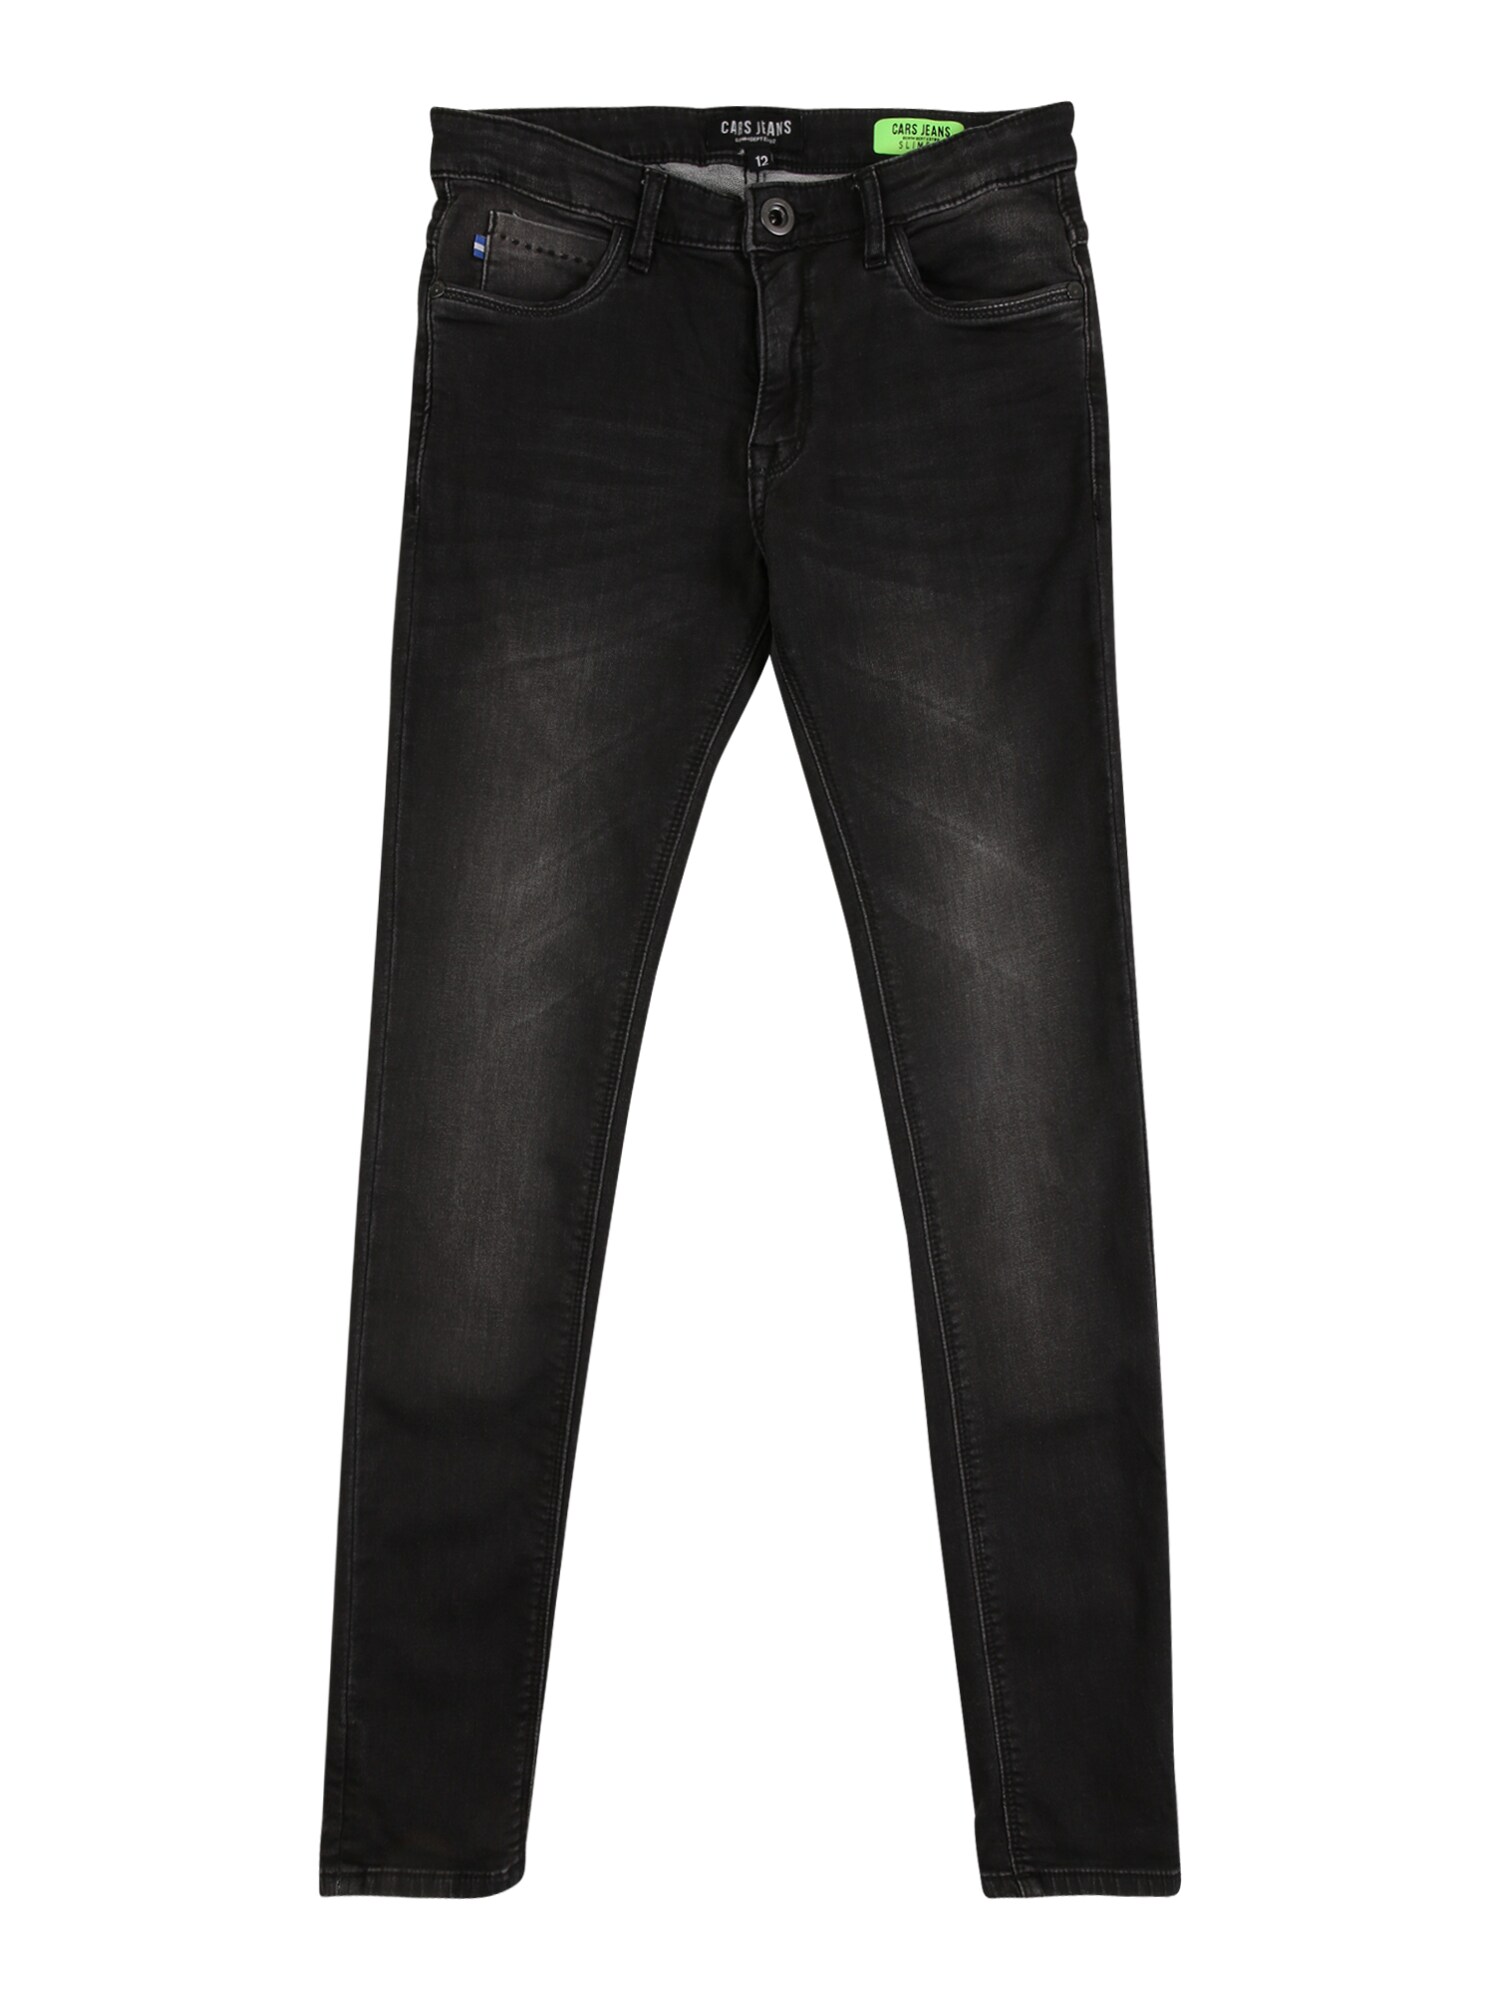 Cars Jeans Džinsai  juodo džinso spalva